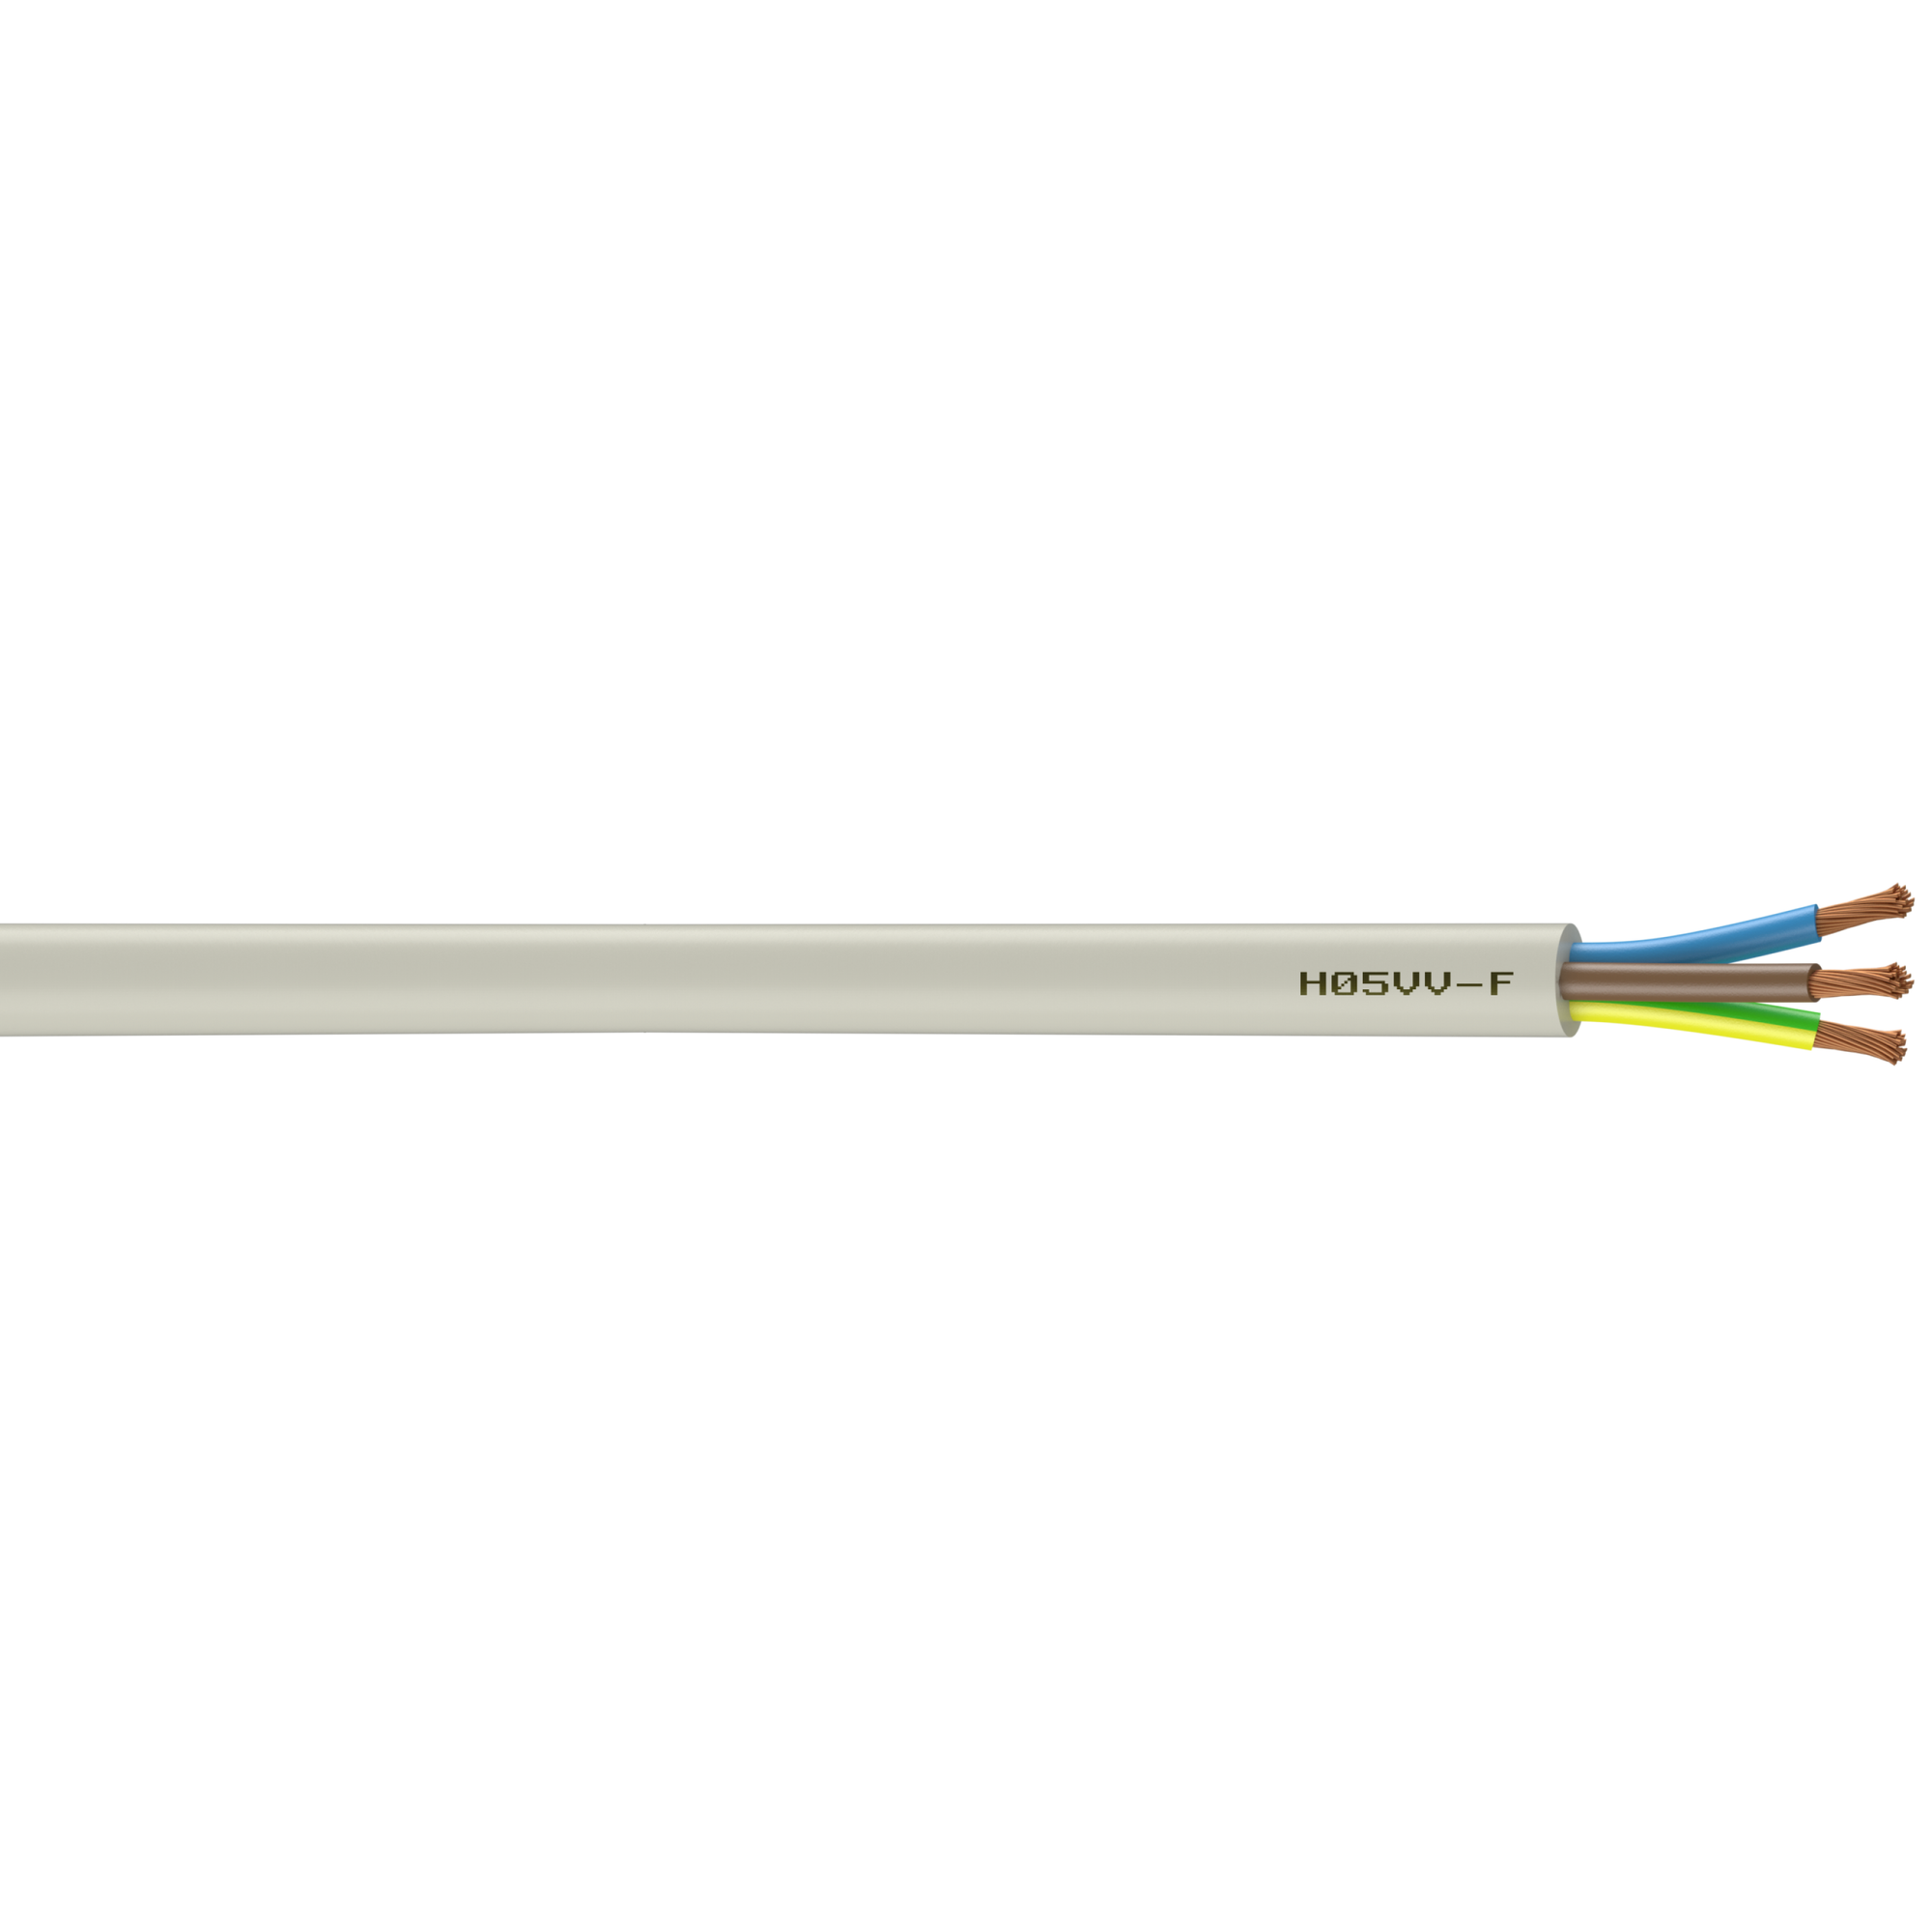 Câble électrique 3 G 1.5 mm² ho5vvf L.3 m, blanc 0